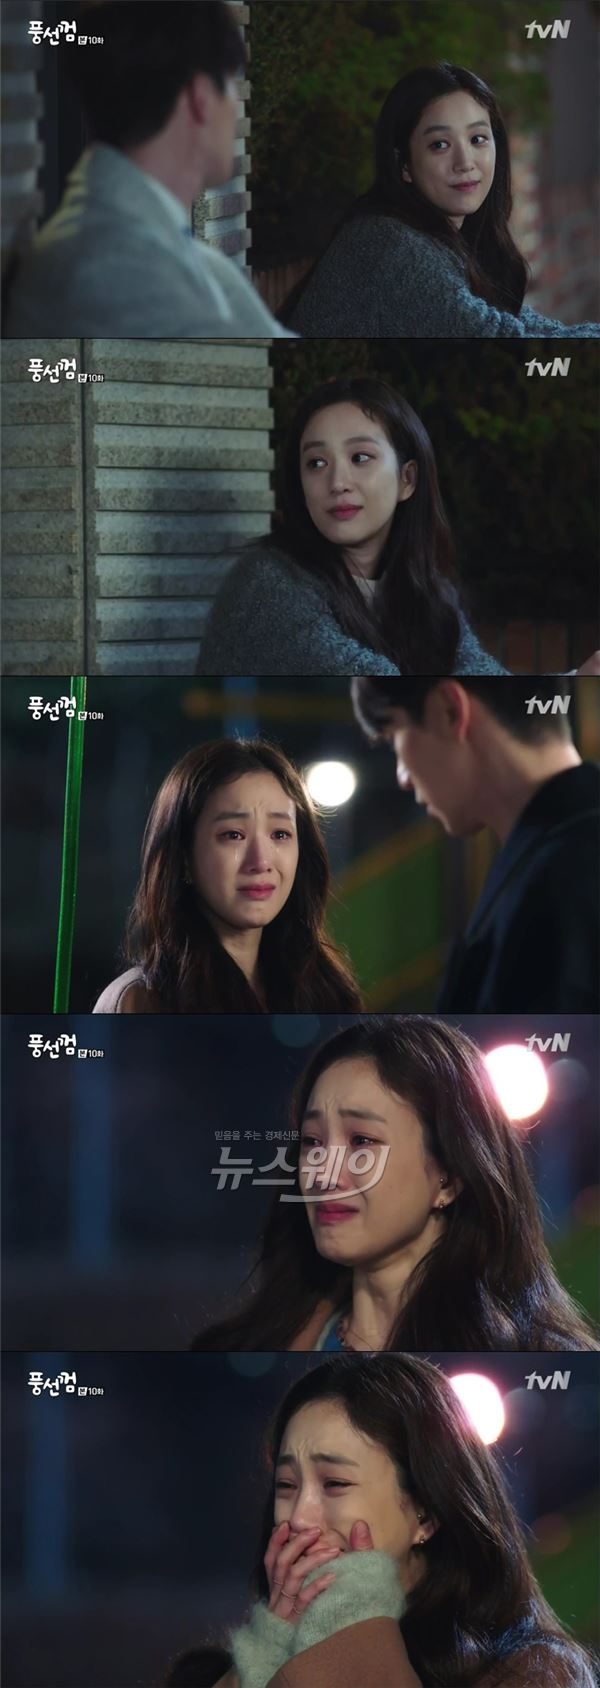 tvN '풍선껌' 정려원이 애잔한 눈빛에 가슴 시린 오열까지 절절한 감성연기를 선보이며 멜로퀸으로 거듭났다 / 사진= '풍선껌' 영상캡처